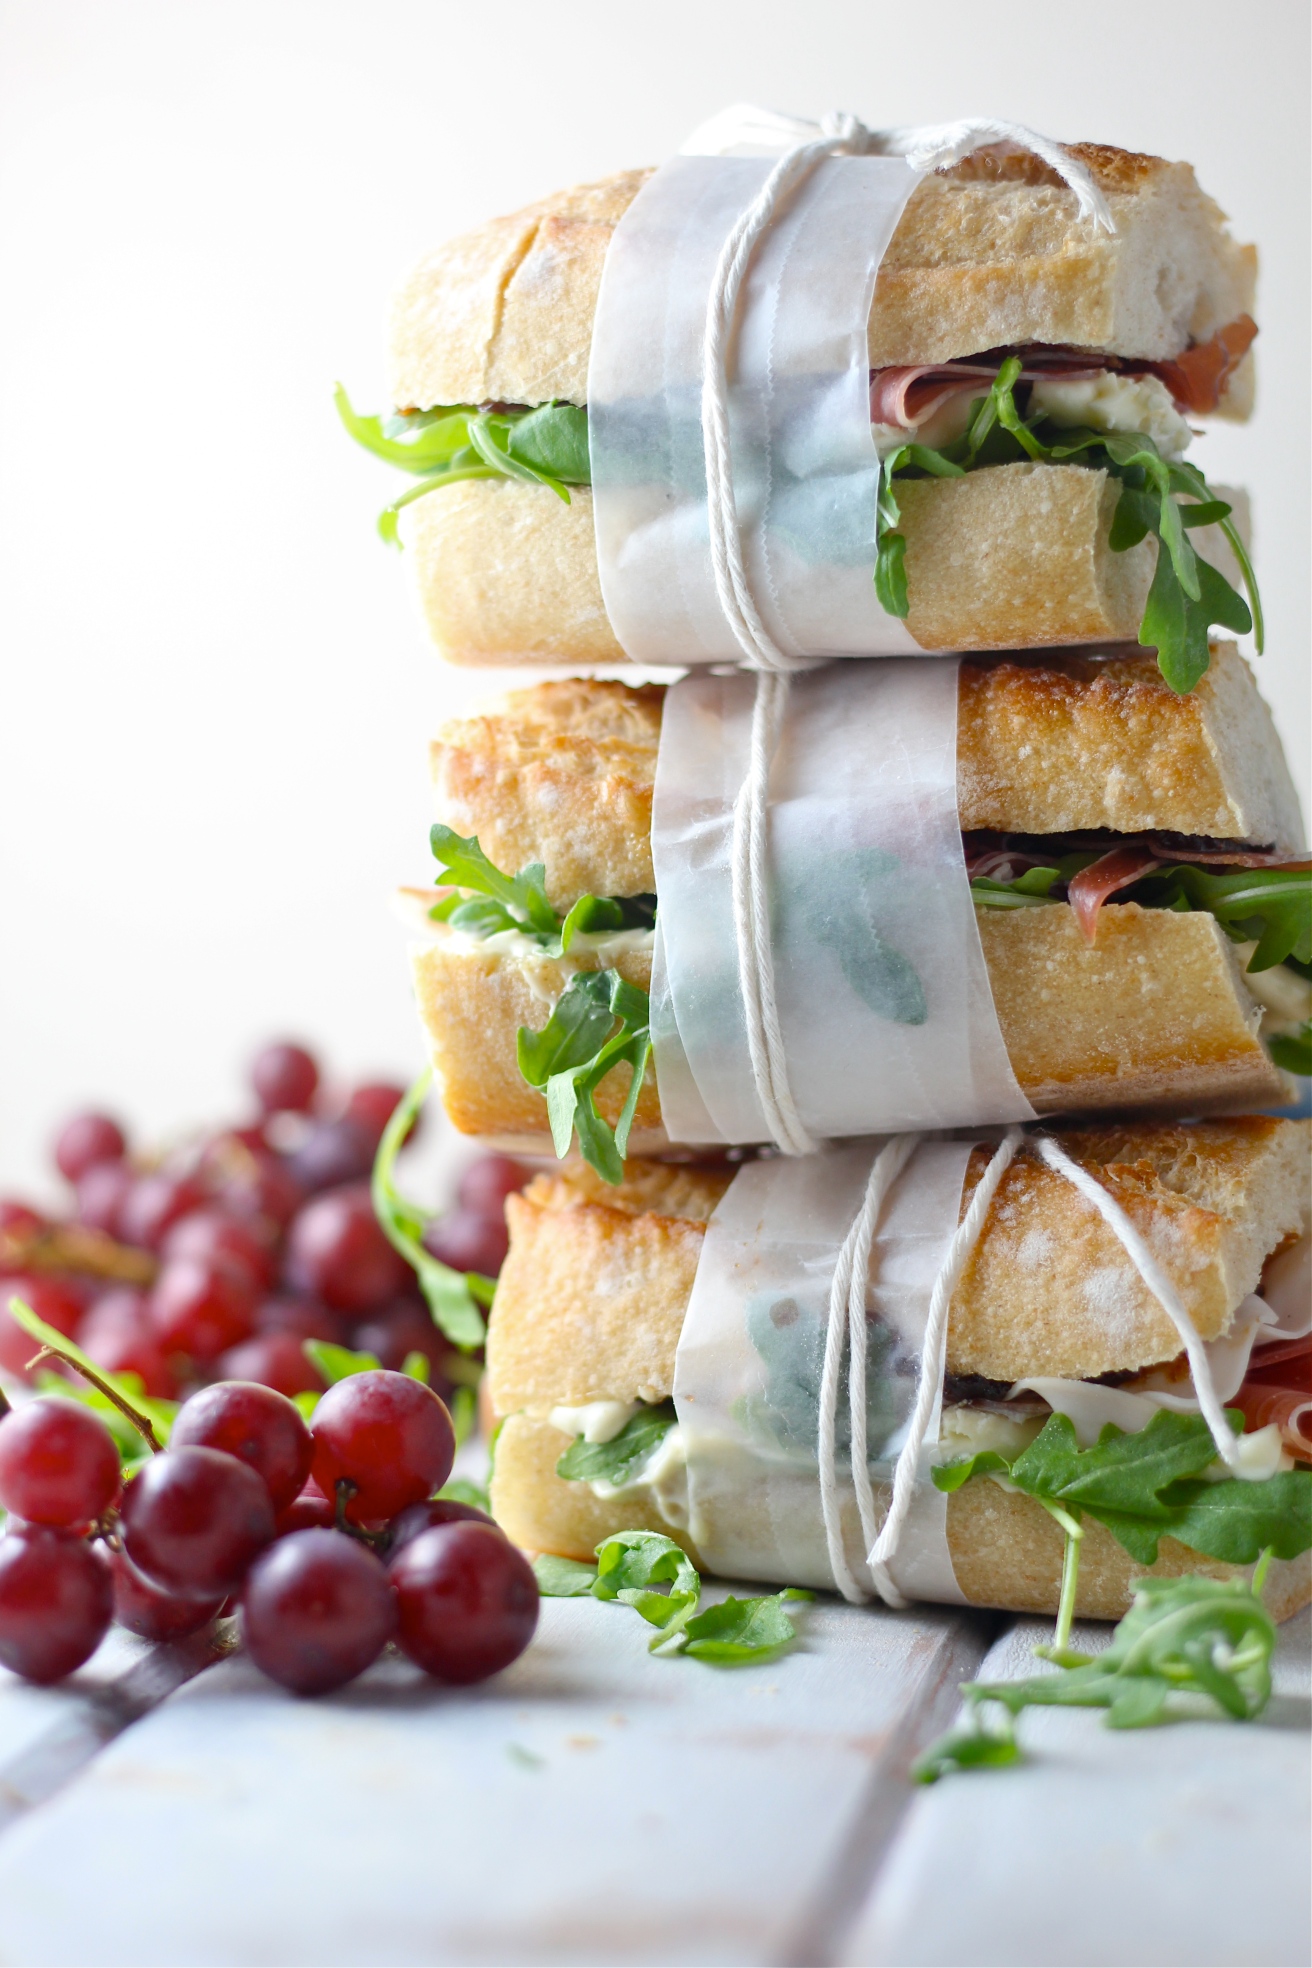 Prosciutto Picnic Sandwiches | The Millennial Cook